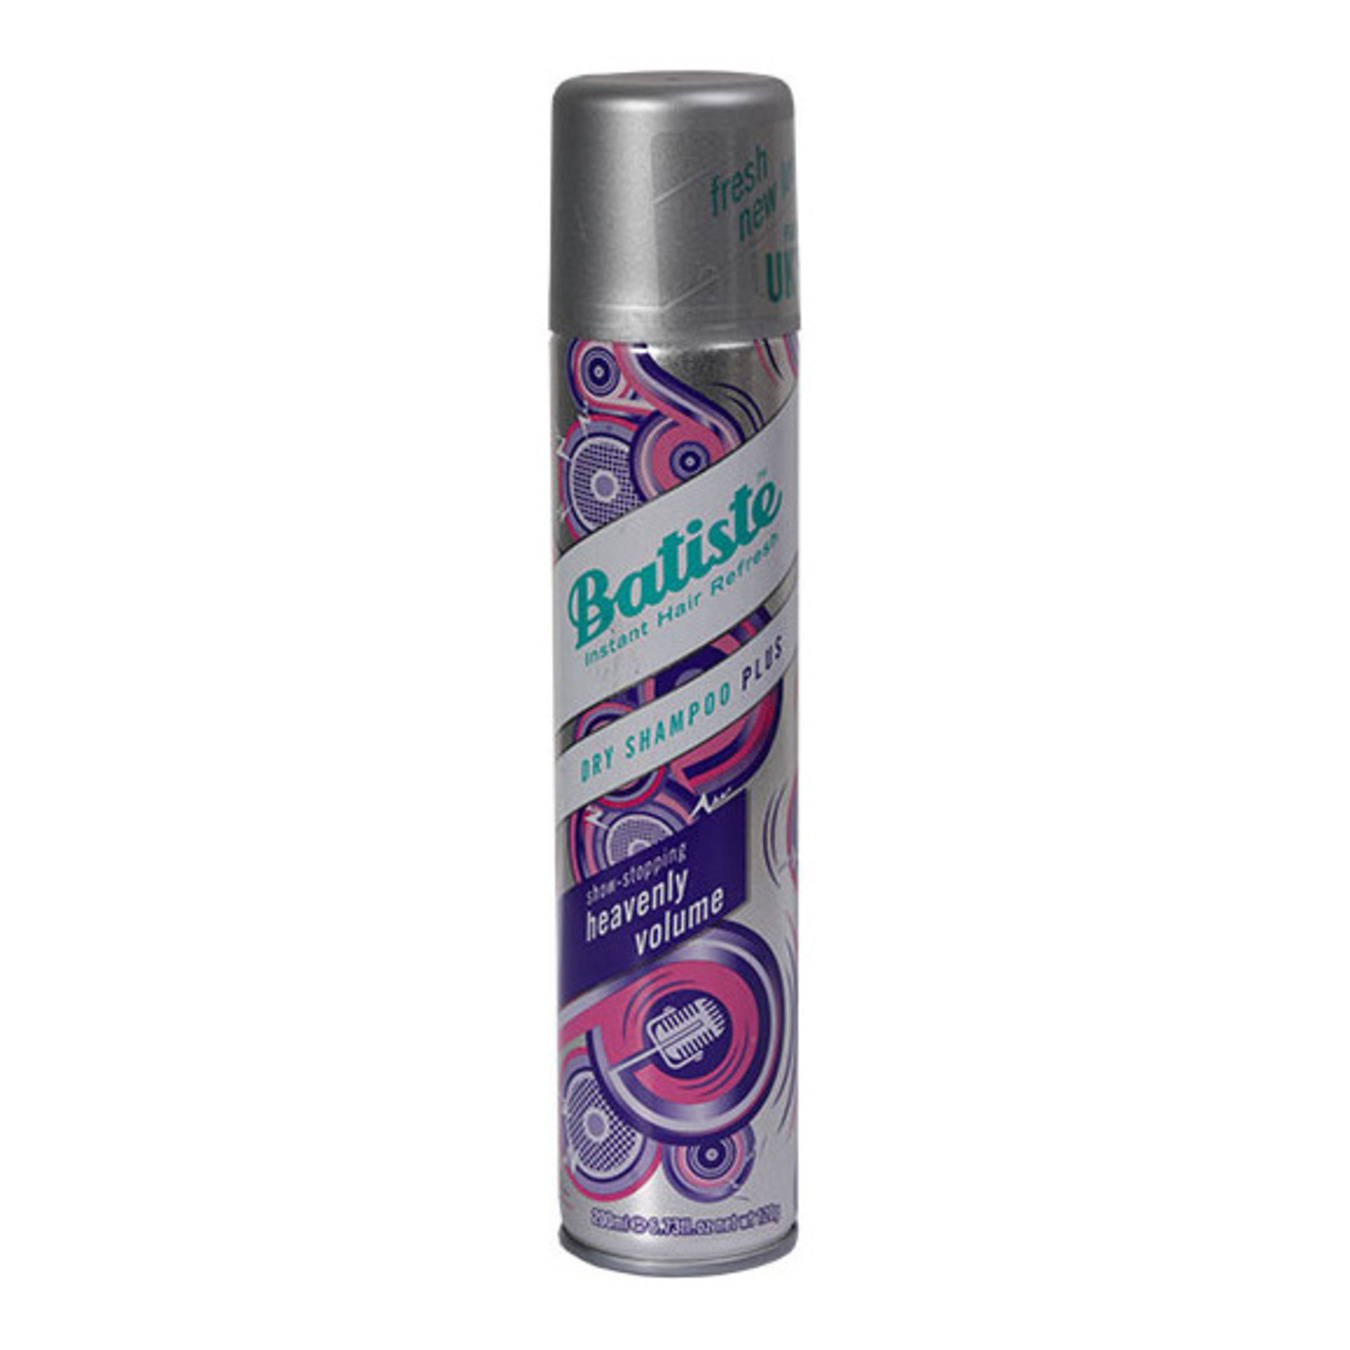 Batiste dry shampoo for volume 200ml